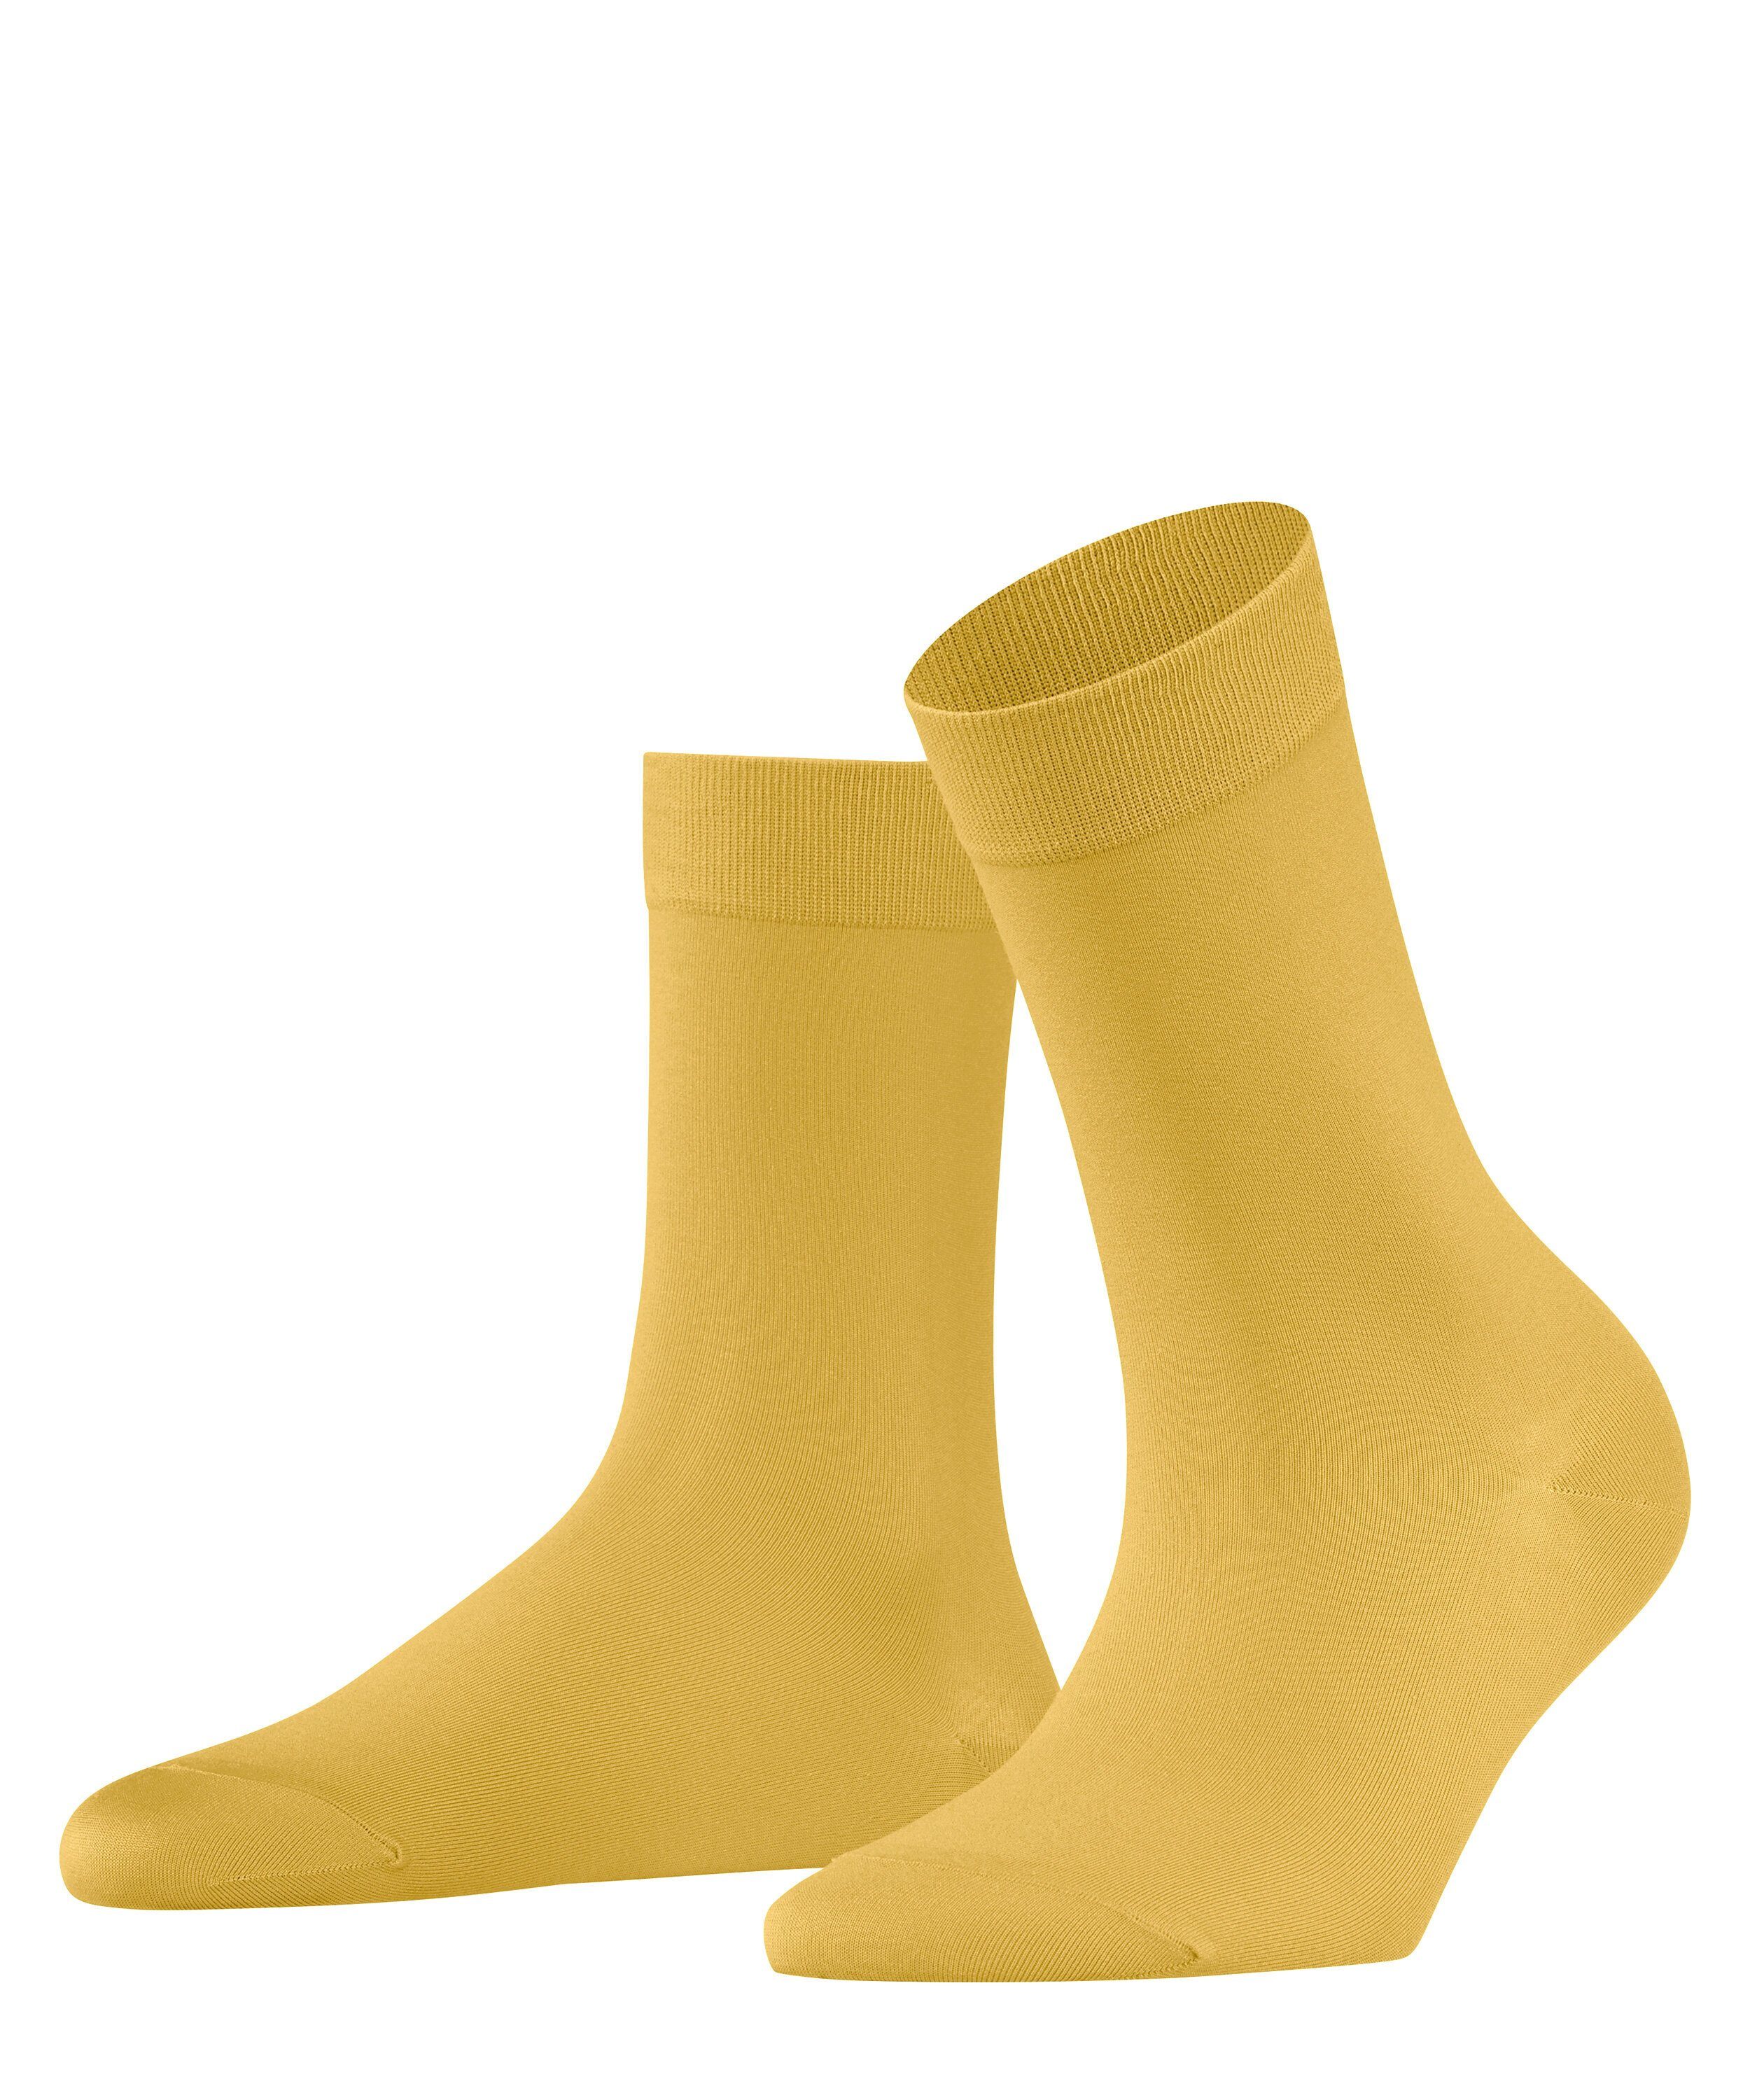 (1187) mustard FALKE Socken Cotton Touch (1-Paar)